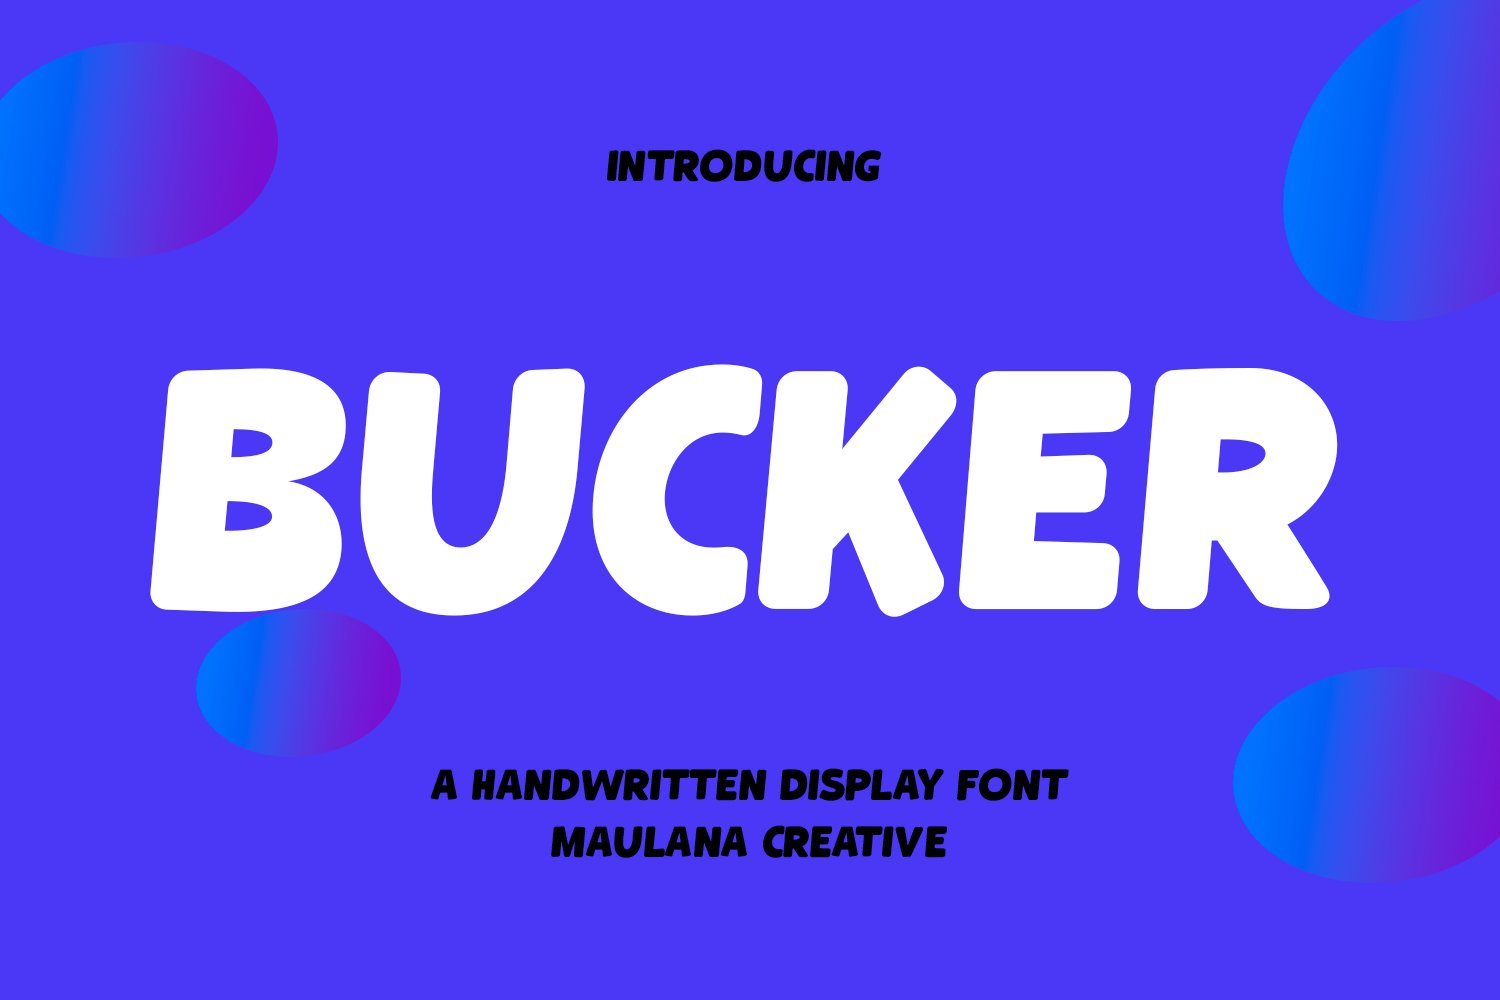 Bucker Handwritten Display Font cover image.